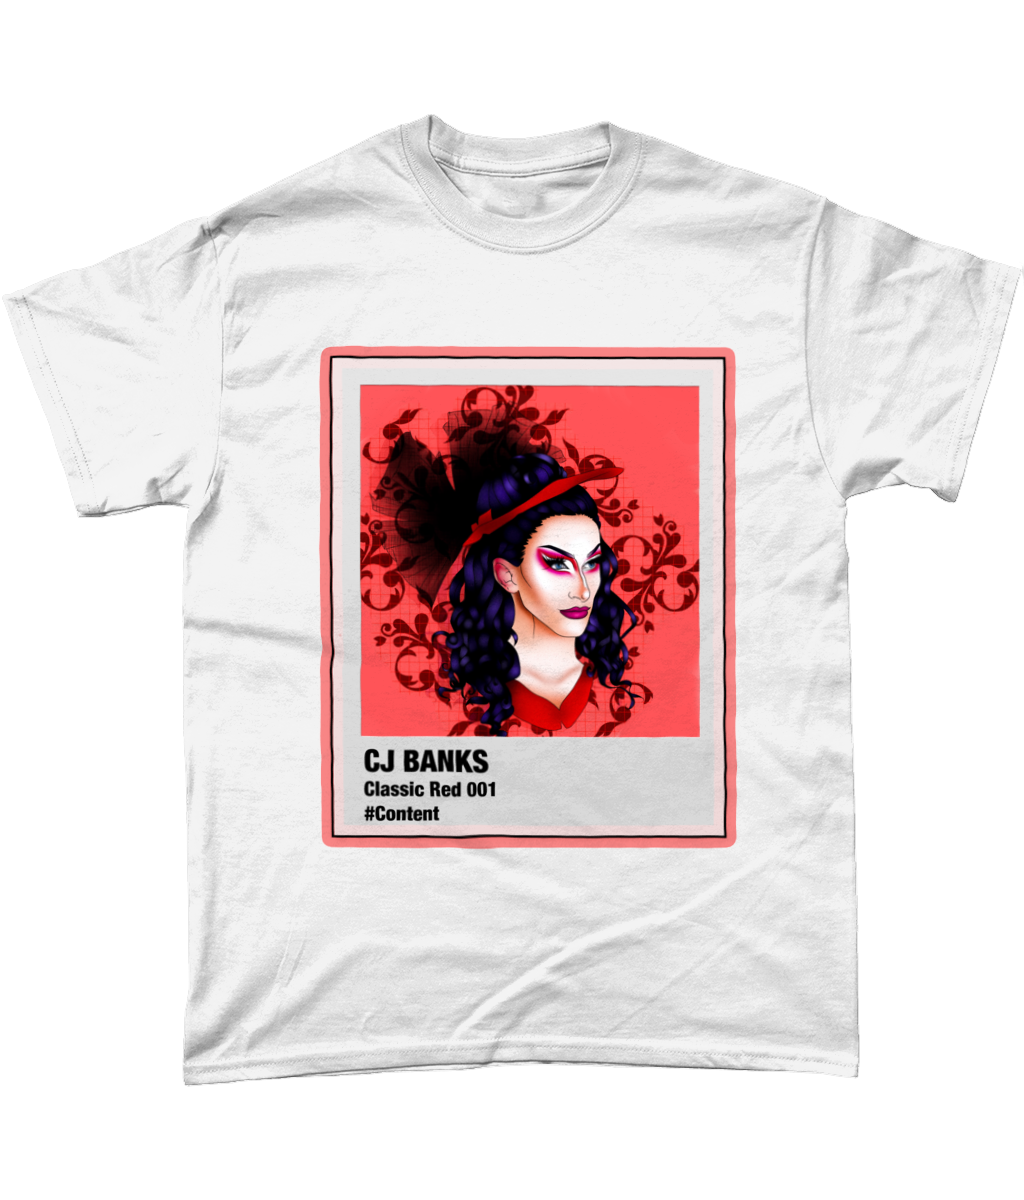 CJ Banks - Polaroid T-shirt